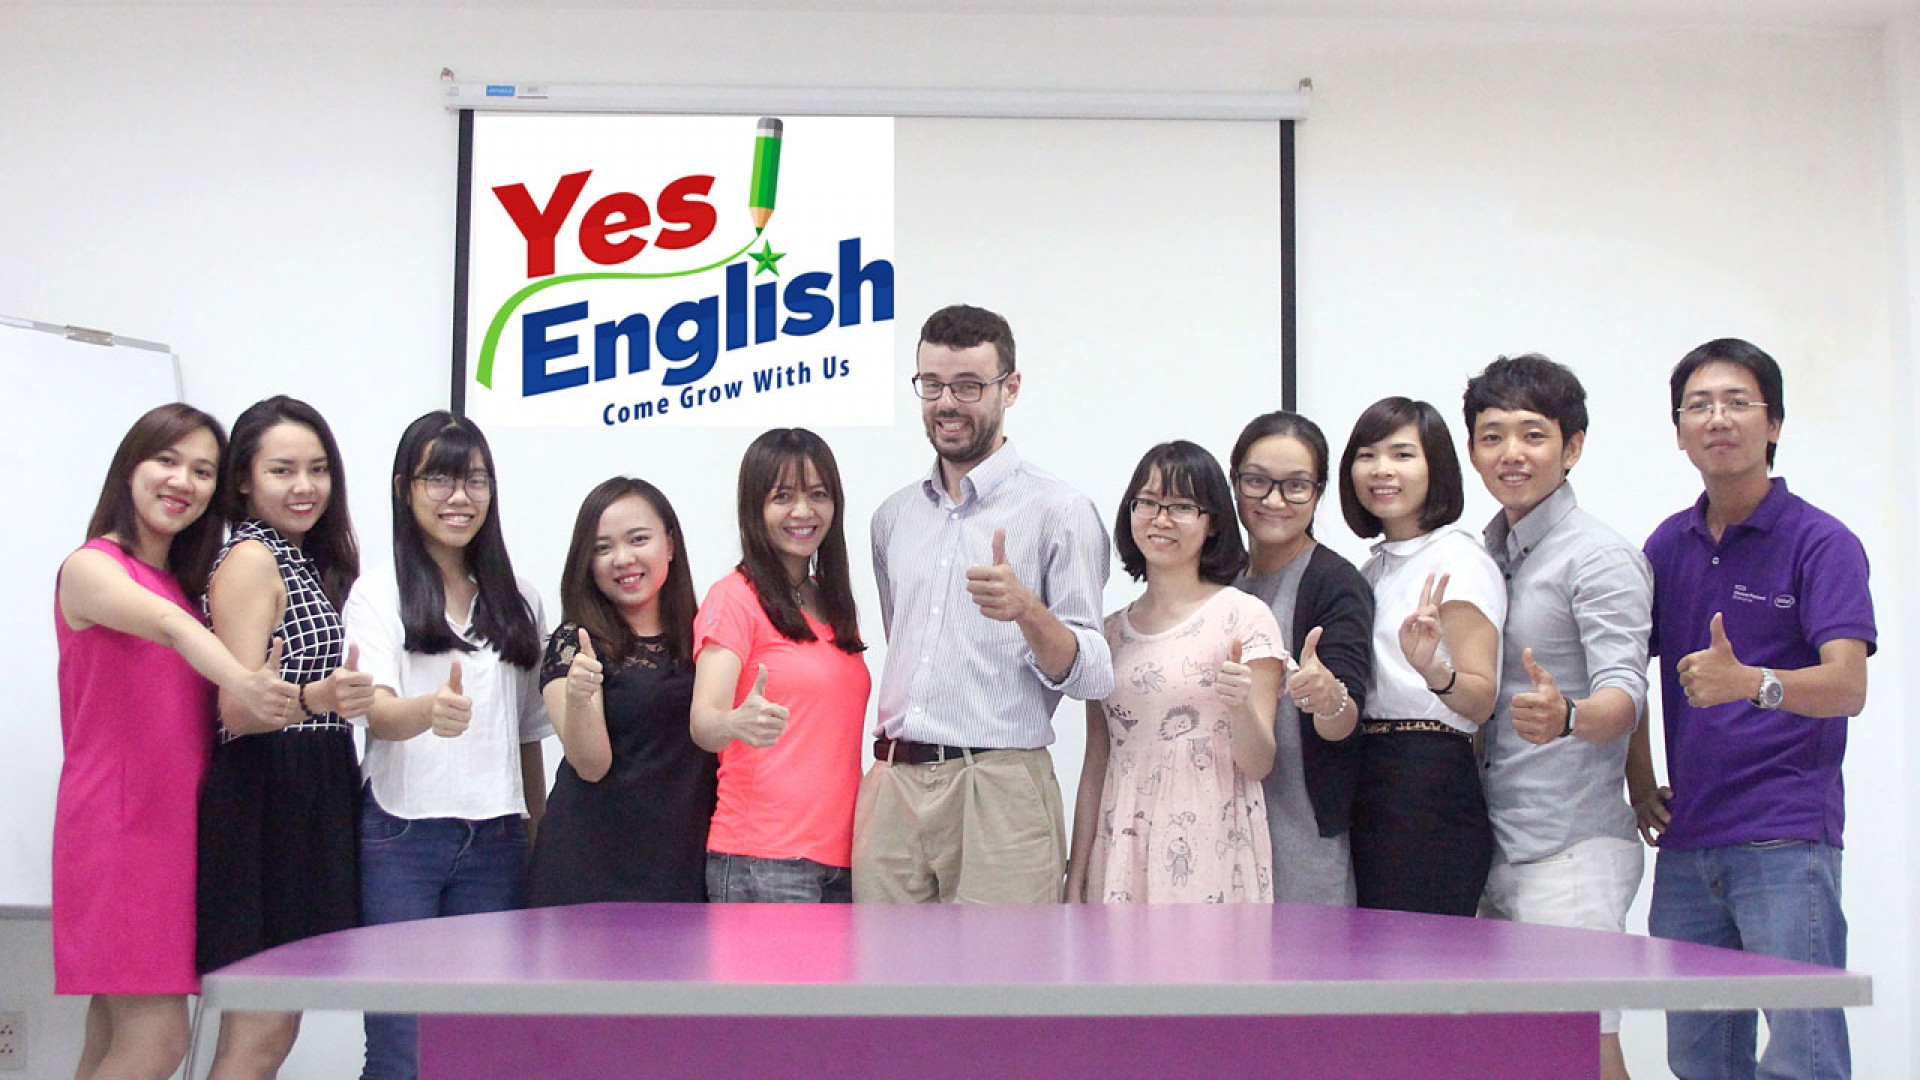 Thuê gia sư và đến Trung tâm Yes English học nhóm: Đâu mới là giải pháp dành cho bạn?